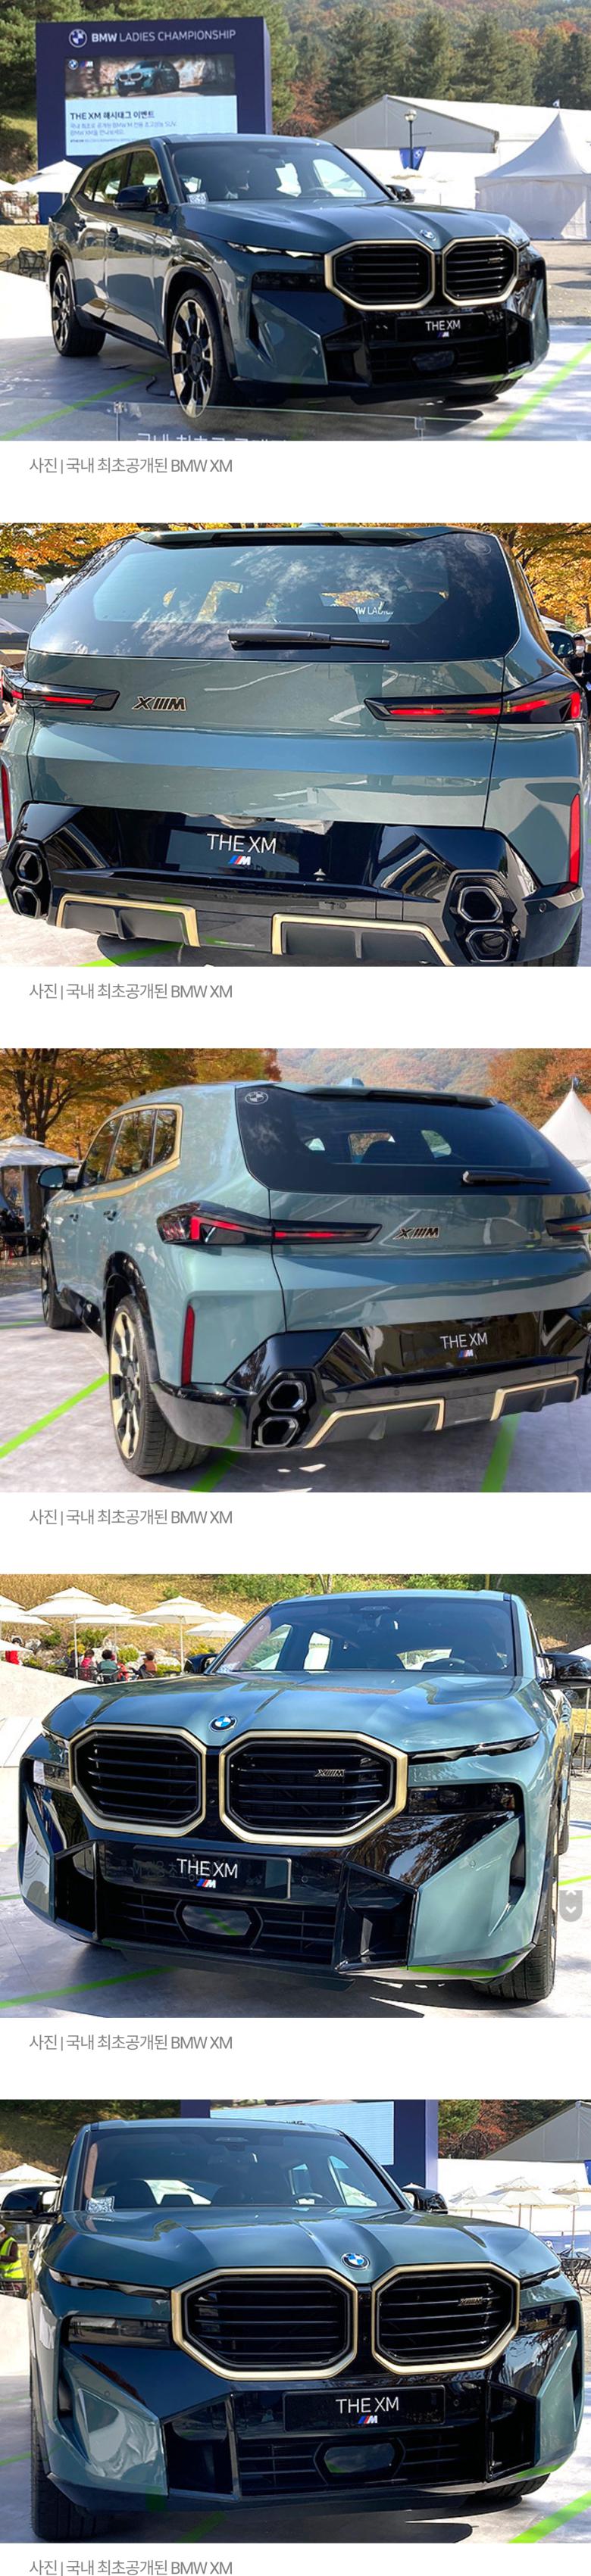 BMW XM 실물 국내 최초공개